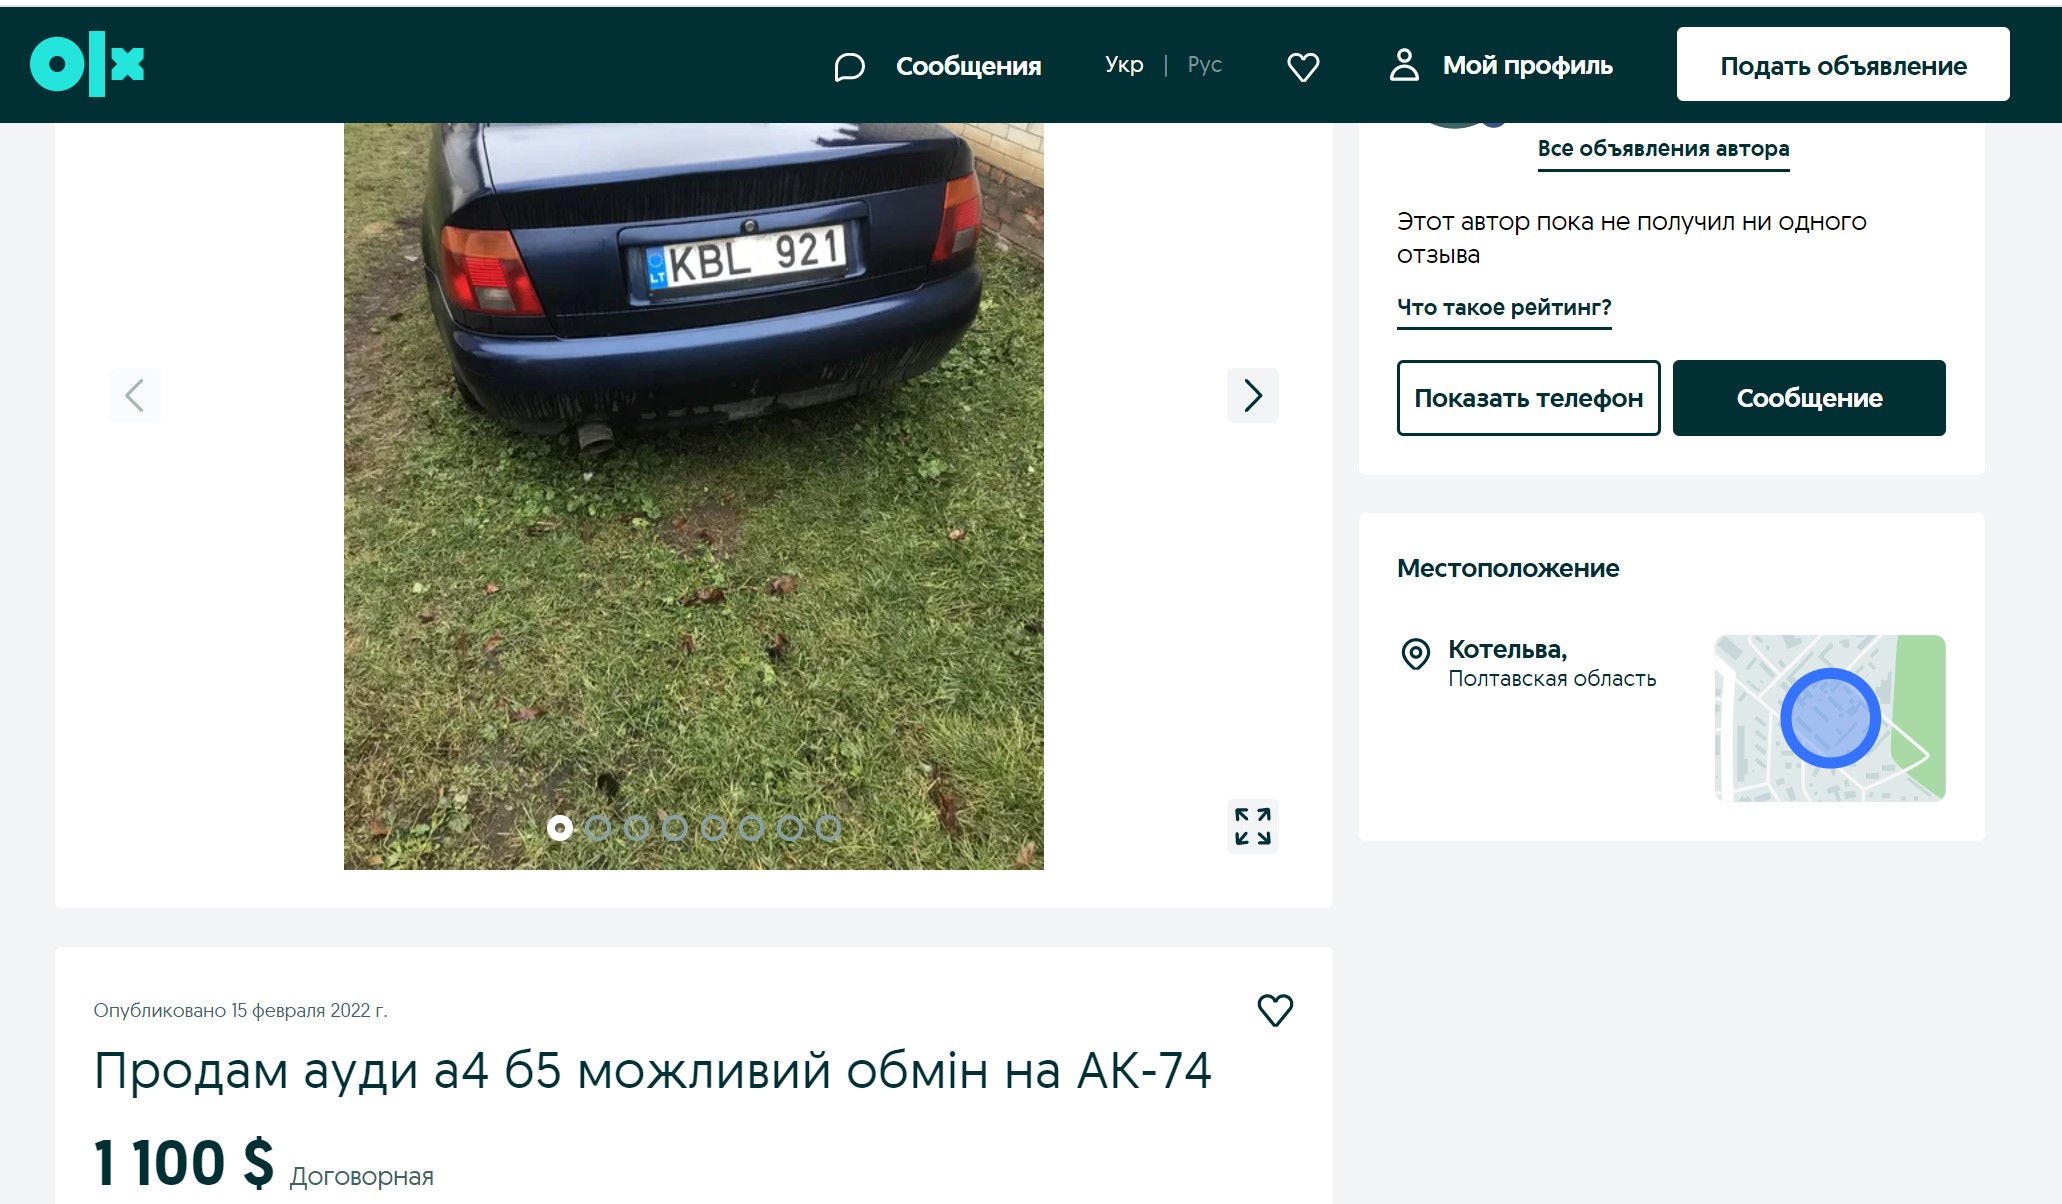 Объявление об обмене автомобиля на автомат на Украине